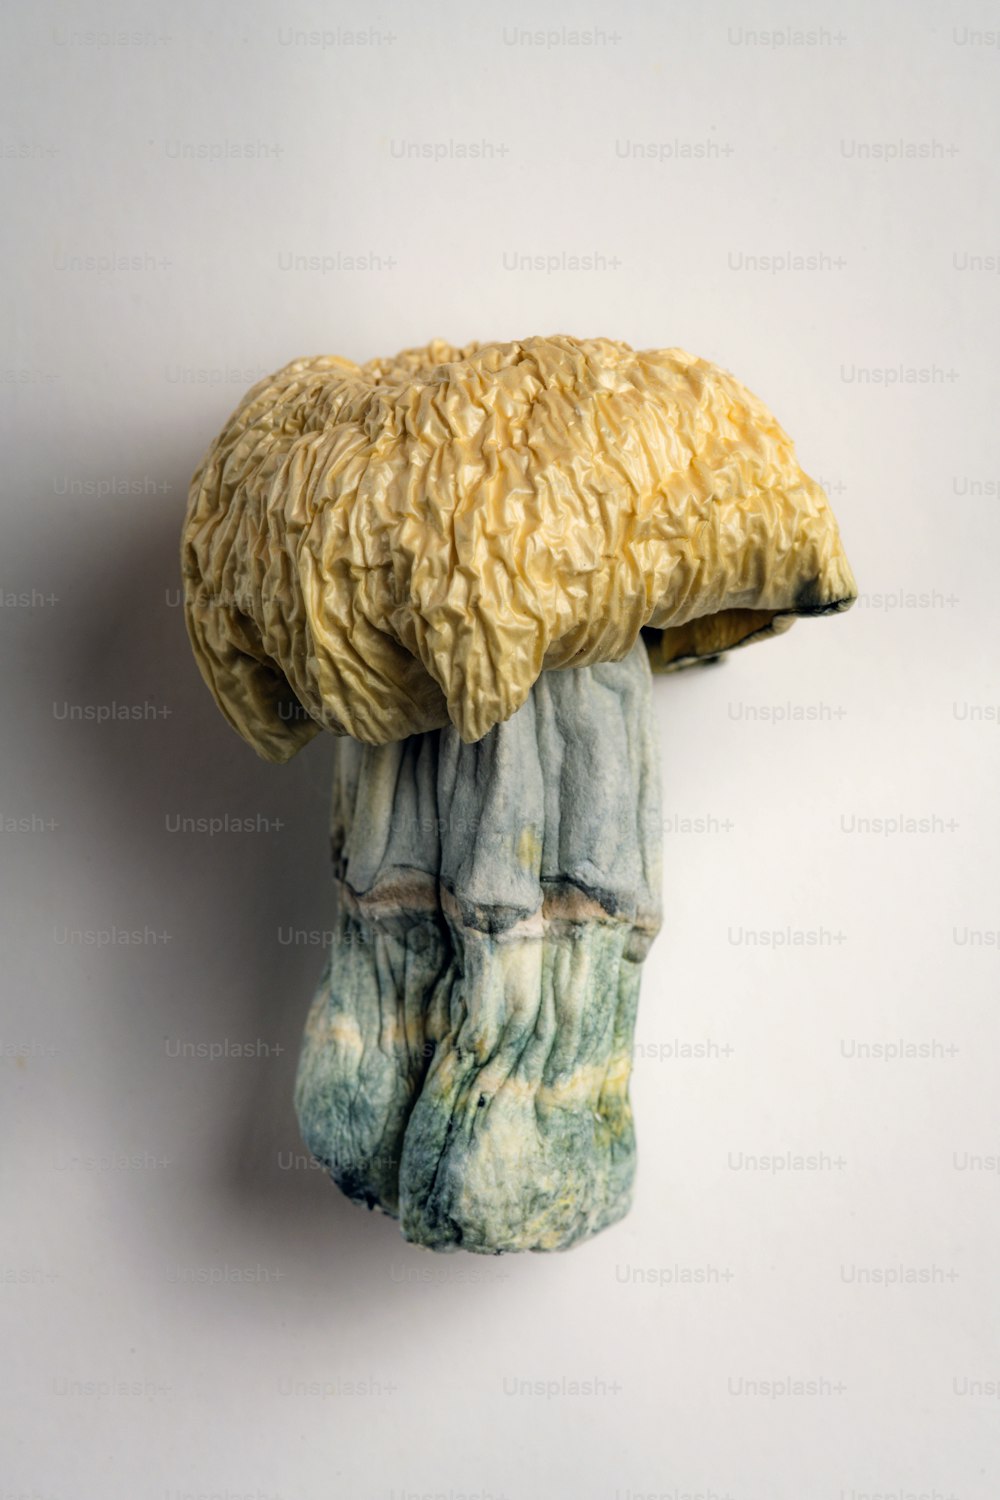 Eine Skulptur eines Pilzes hängt an einer Wand